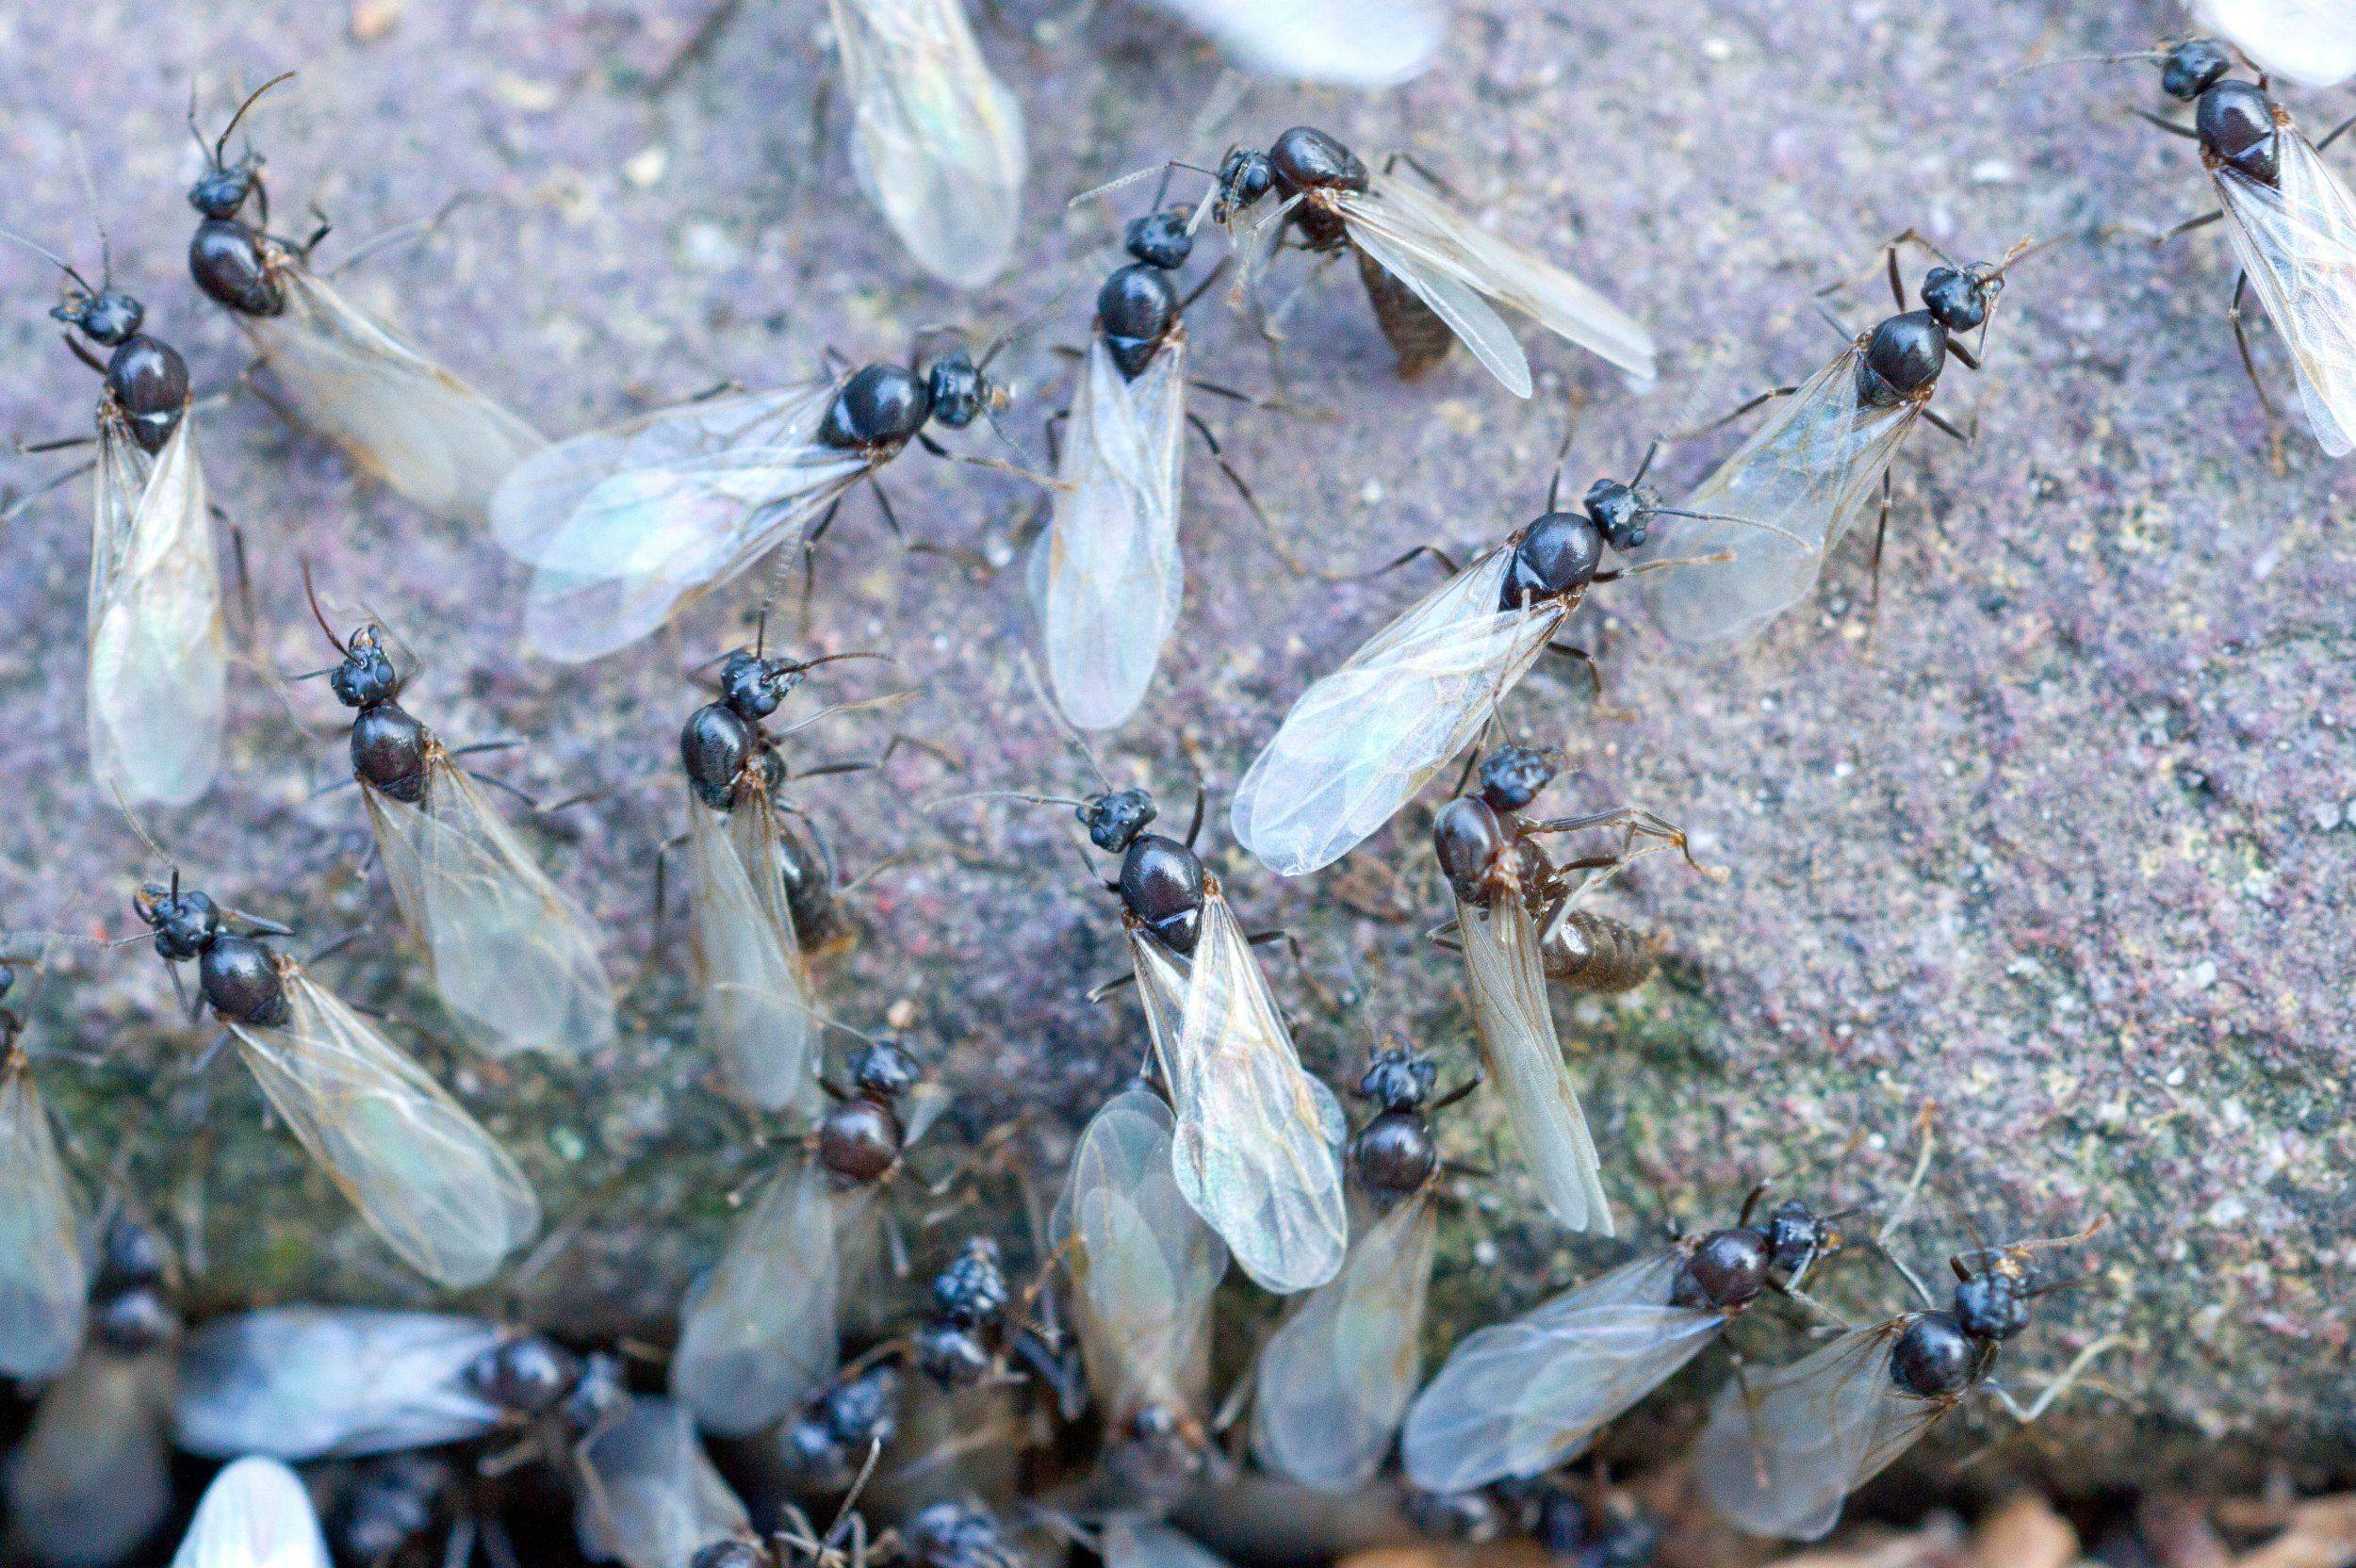 Летающие муравьи в доме. Муравьи с крыльями. Крылатые муравьи на муравейнике. Матка муравья с крыльями. Муравьи с крылышками.